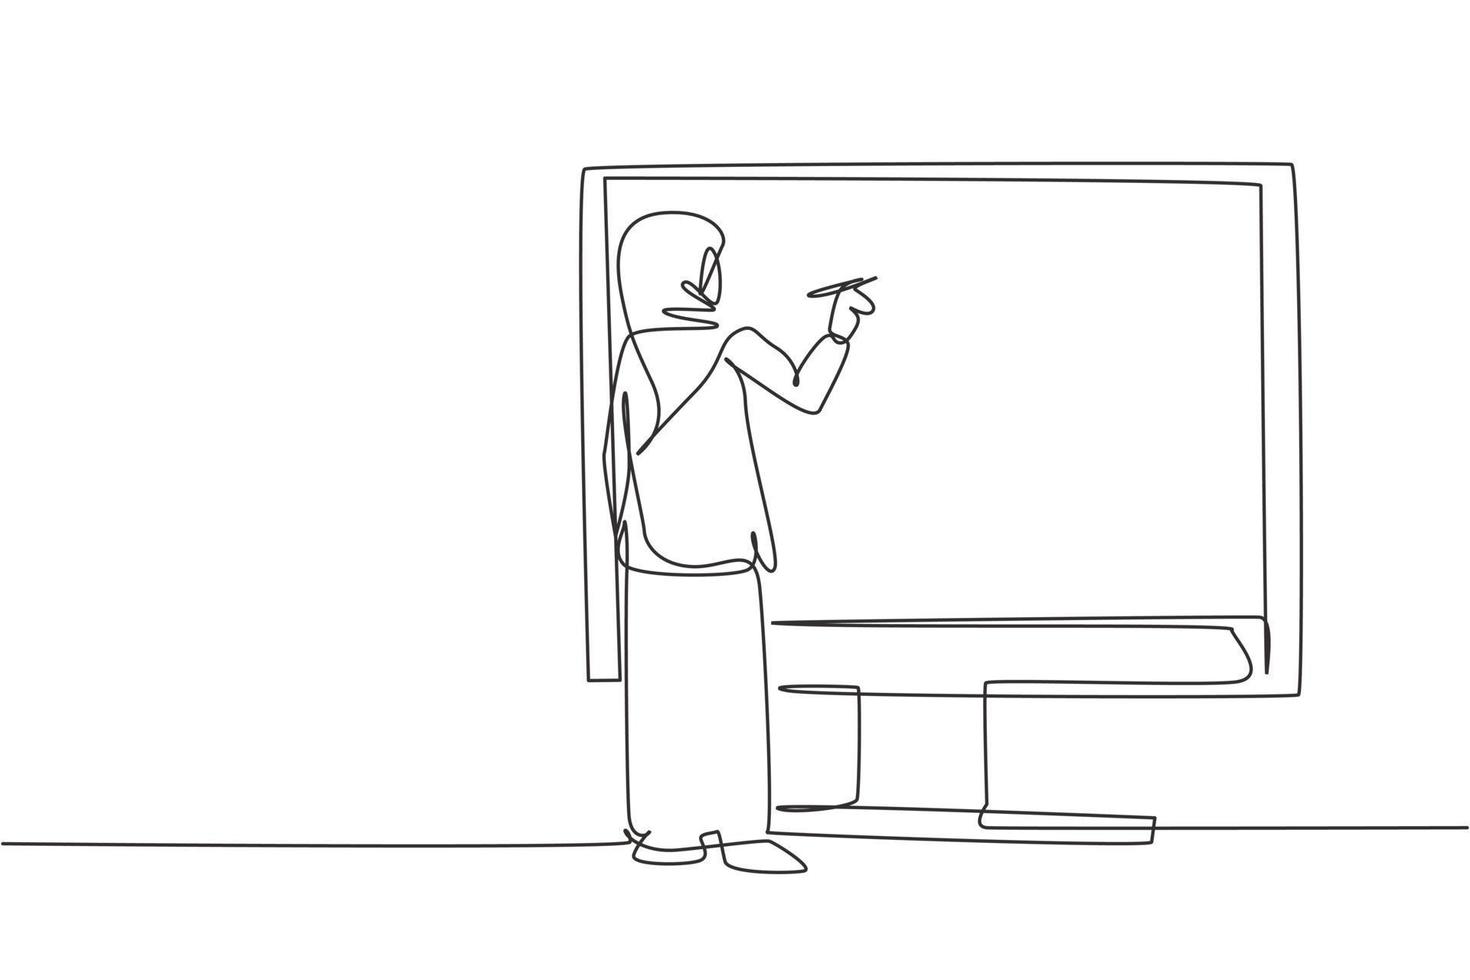 einzelne einzeilige Zeichnung arabische Schülerin der Junior High School, die auf einem riesigen Bildschirm schreibt, als würde sie auf einem Whiteboard schreiben. moderne durchgehende Linie zeichnen Design-Grafik-Vektor-Illustration vektor